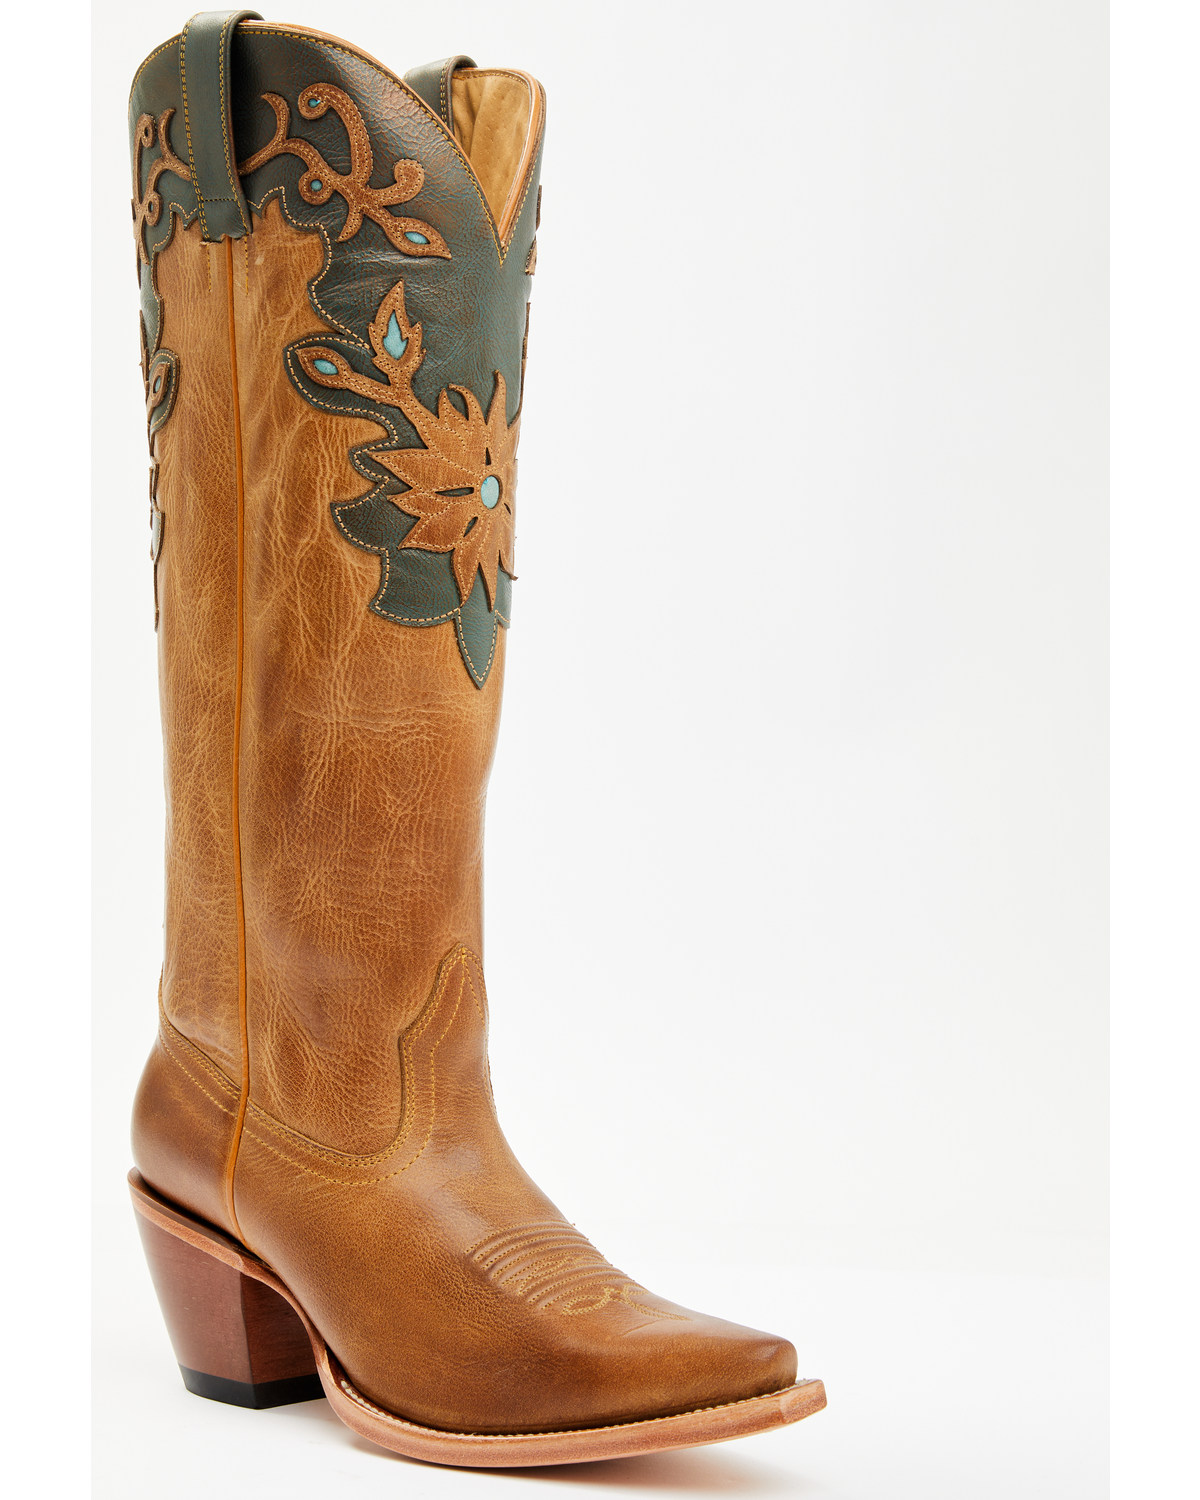 Shyanne Women's Juni Western Boots - Snip Toe